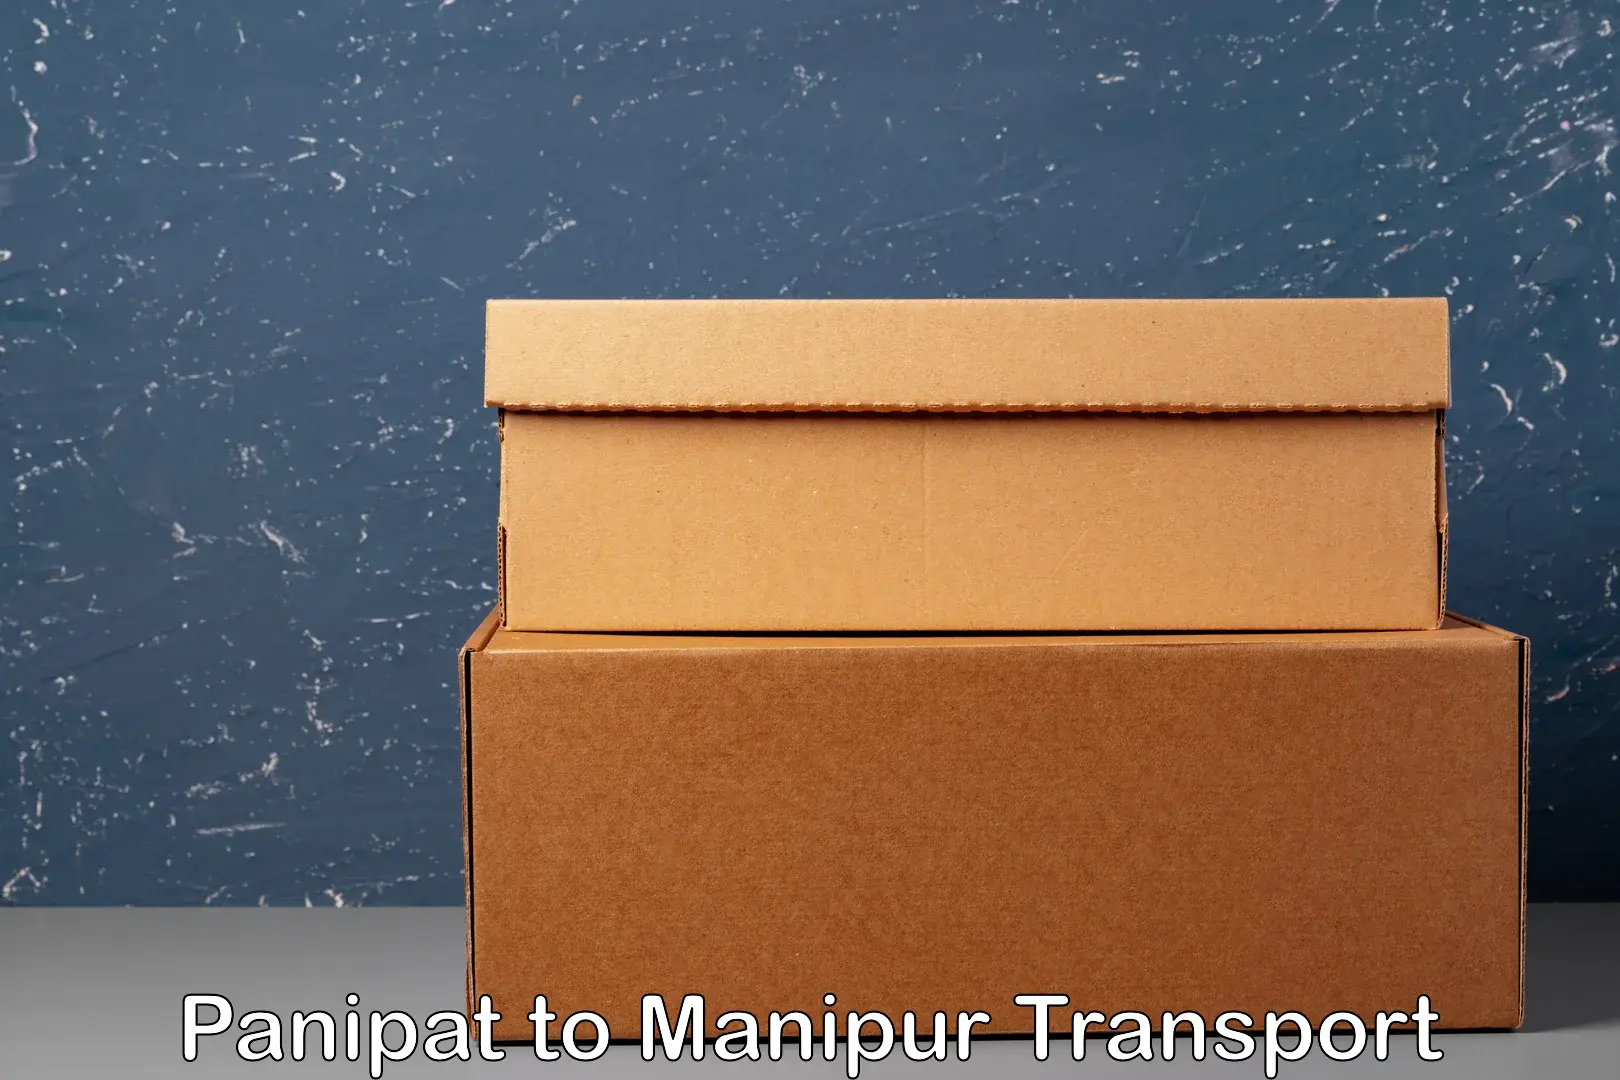 Furniture transport service Panipat to Manipur